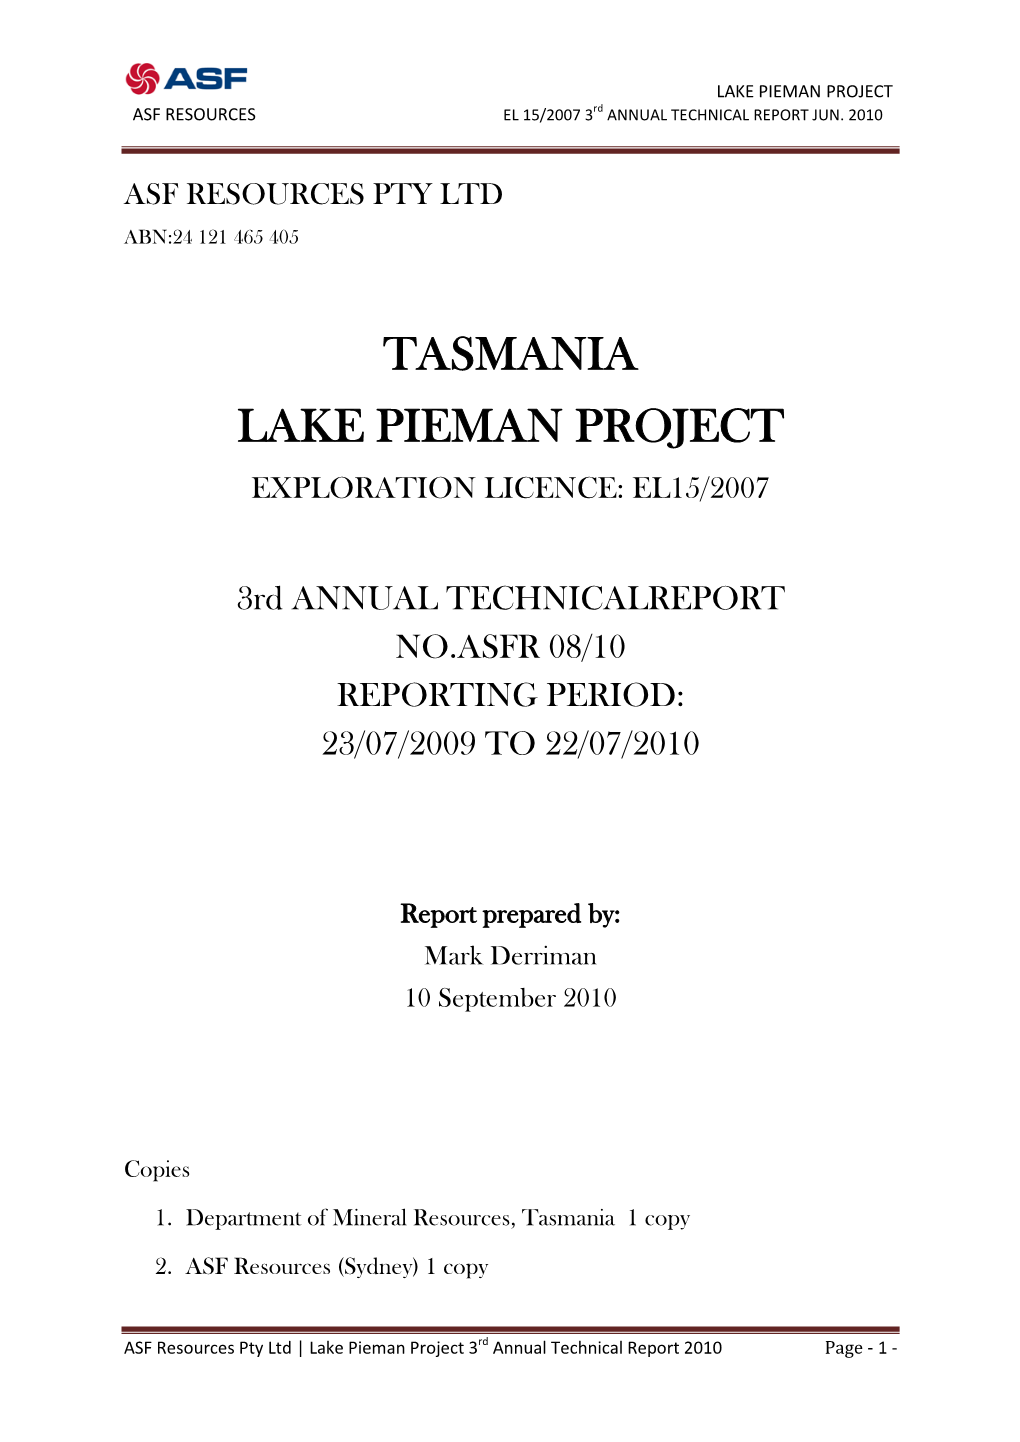 Tasmania Lake Pieman Project Exploration Licence: El15/2007